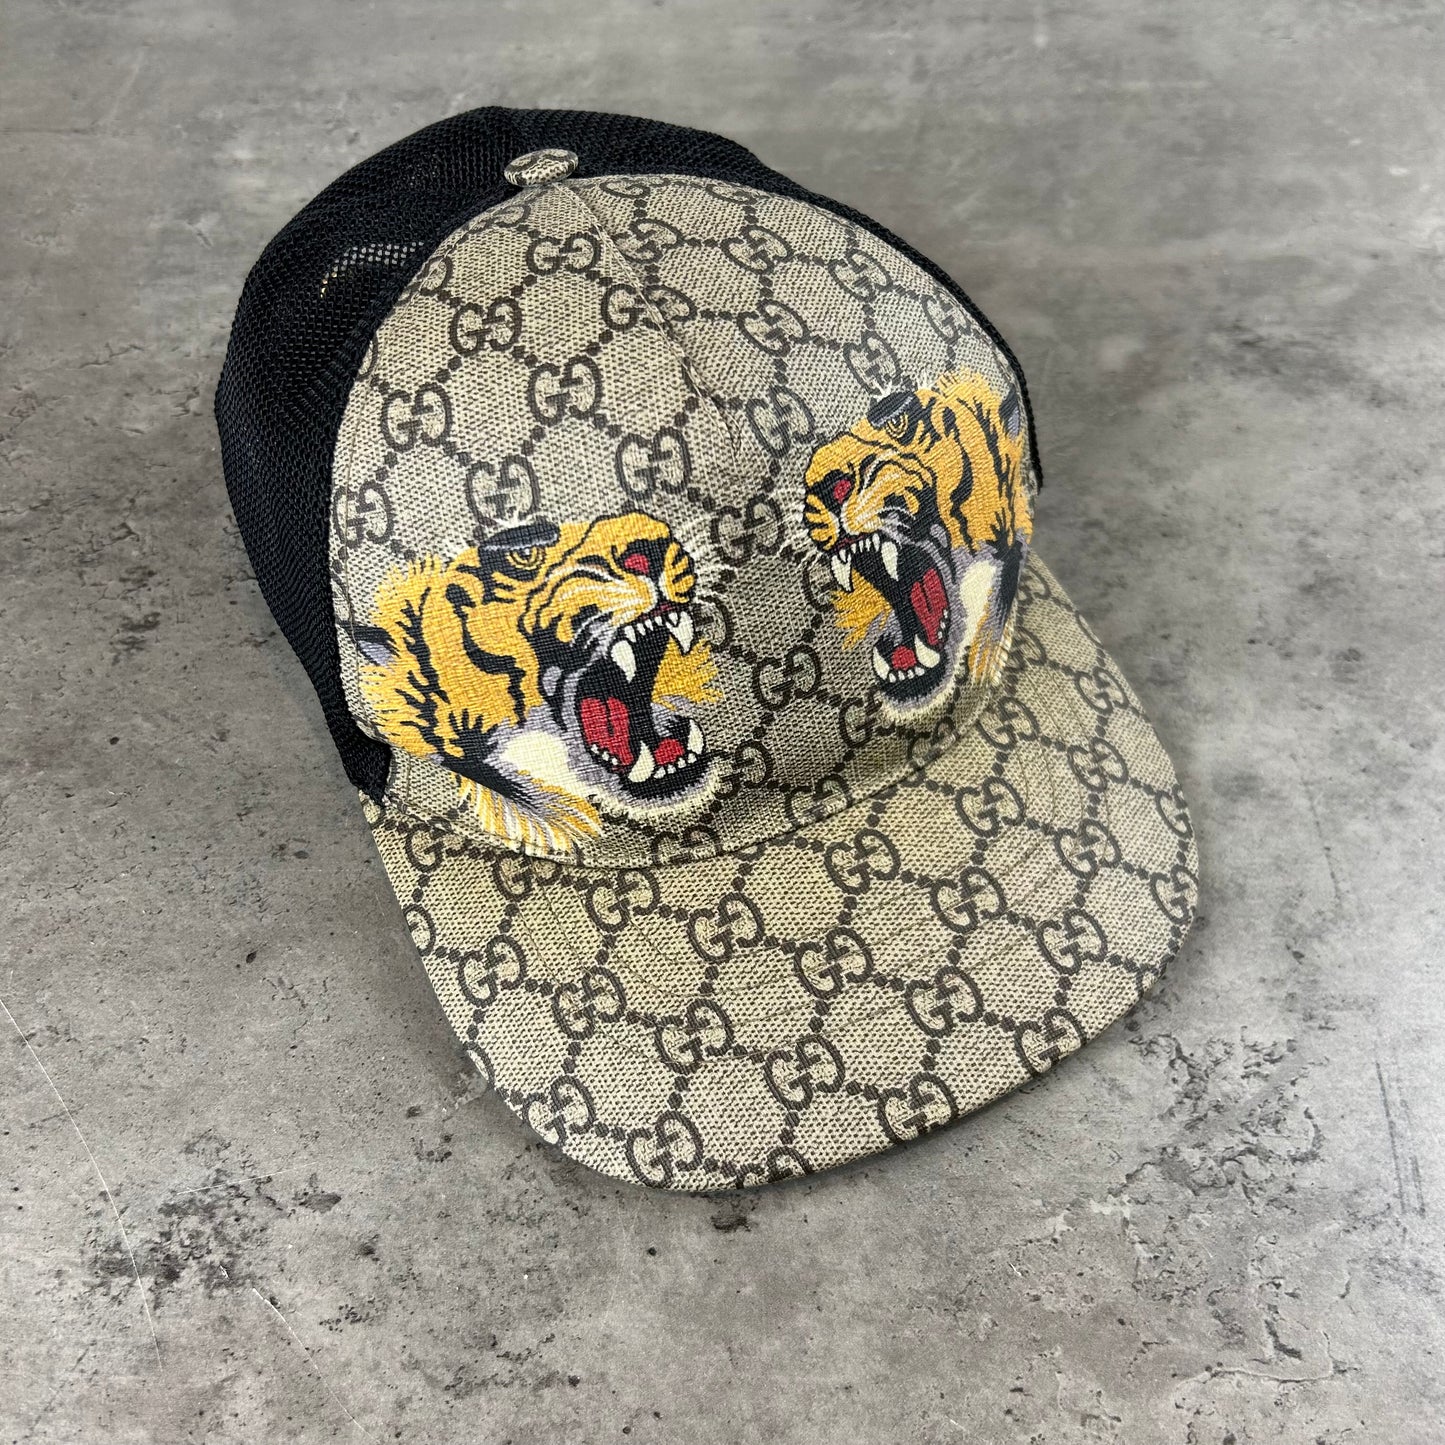 Tiger Cap